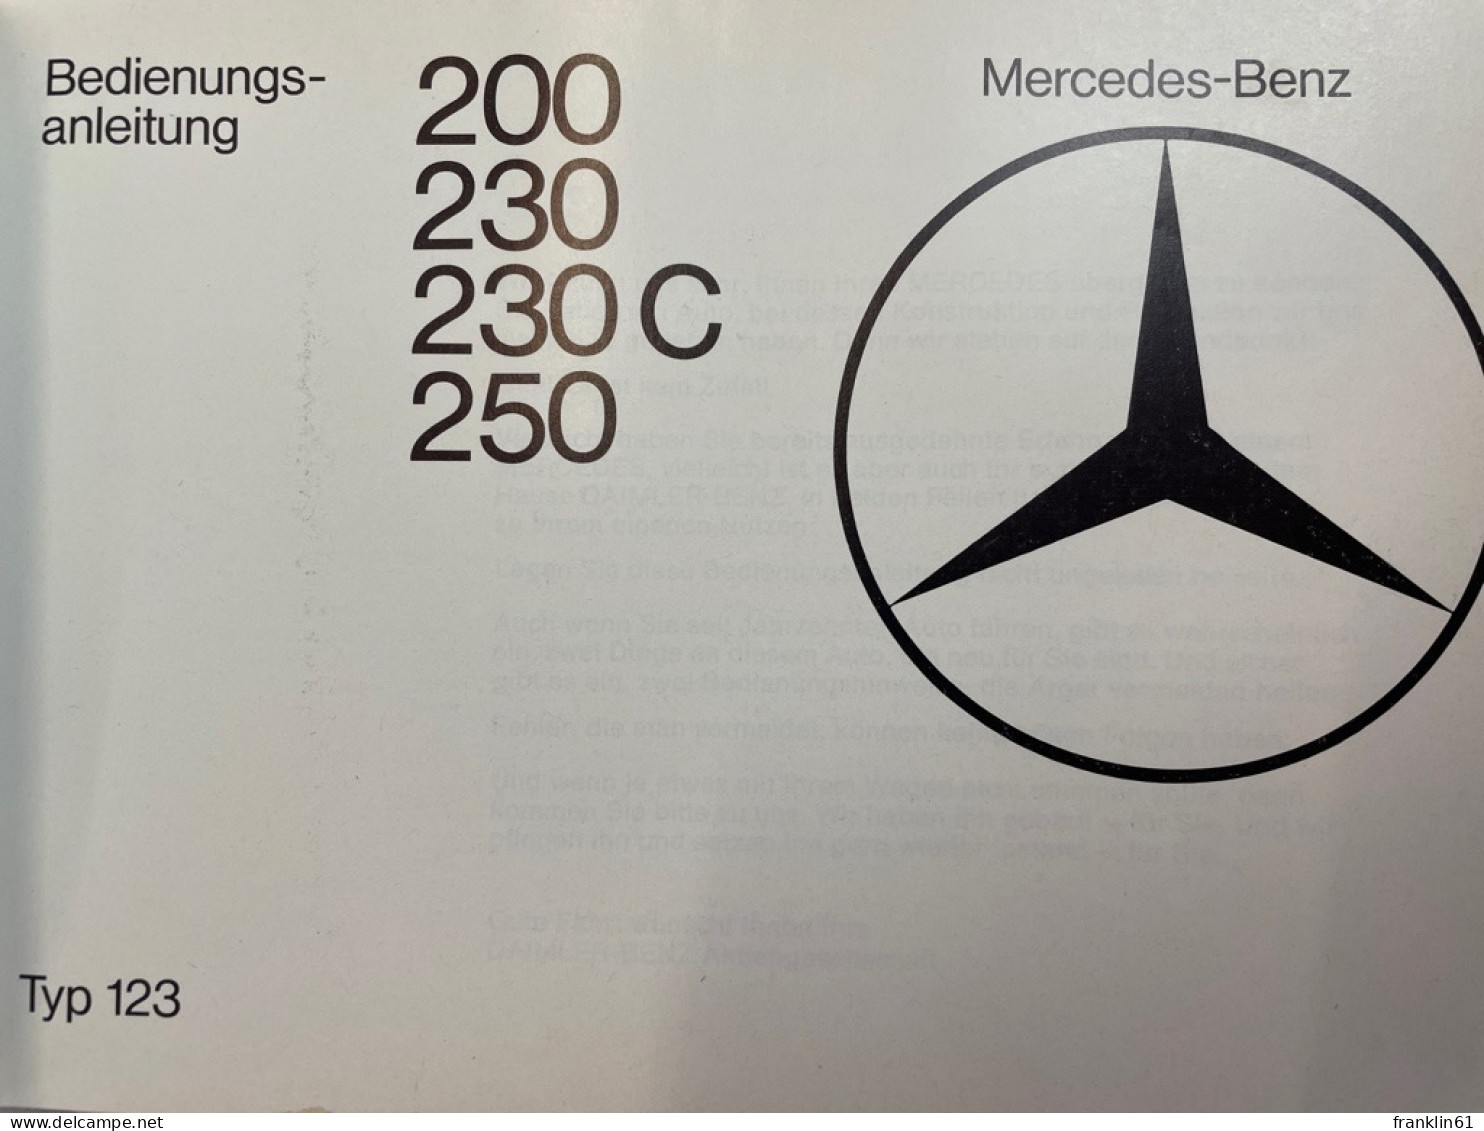 Mercedes-Benz 200, 230, 230 C, 250. Bedienungsanleitung. - Transporte